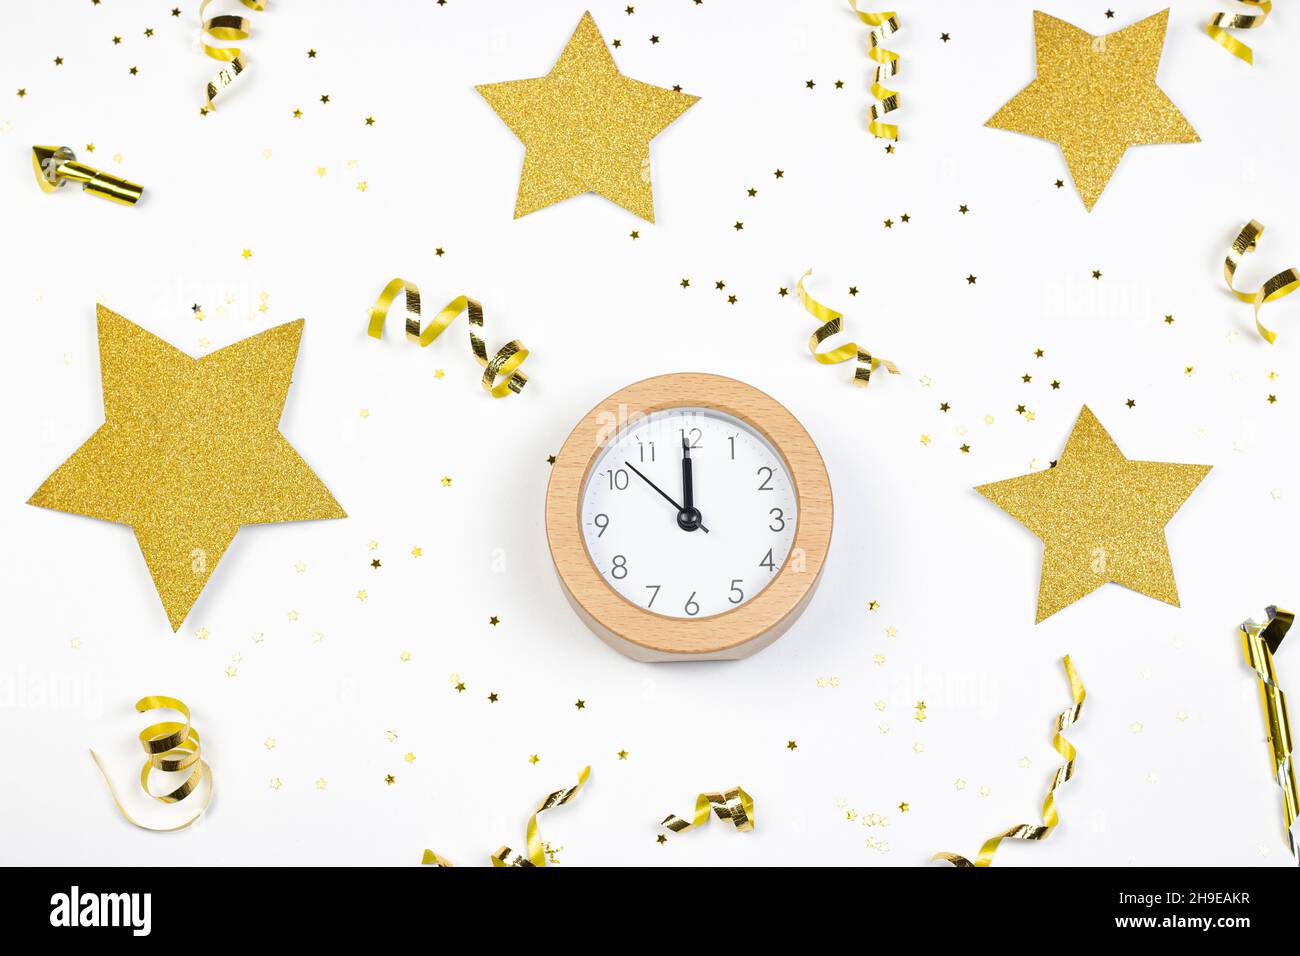 Concetto del tempo del partito. Orologio, stelle glitter e confetti dorati su sfondo bianco. Disposizione piatta. Foto Stock